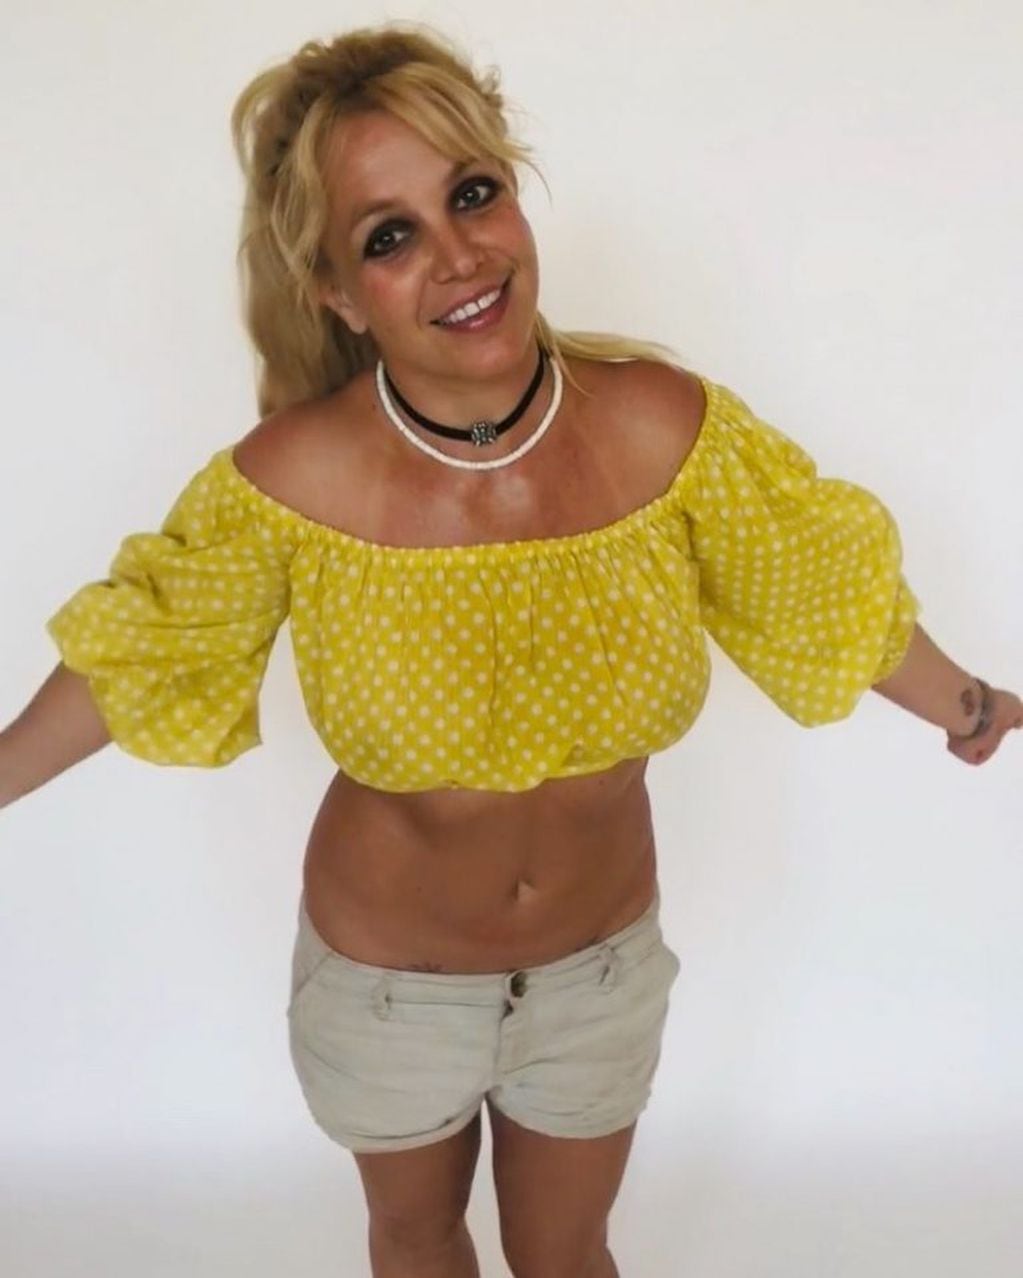 Supuestamente Britney Spears manda mensajes en código con el color de su ropa. (Instagram/britneyspears)